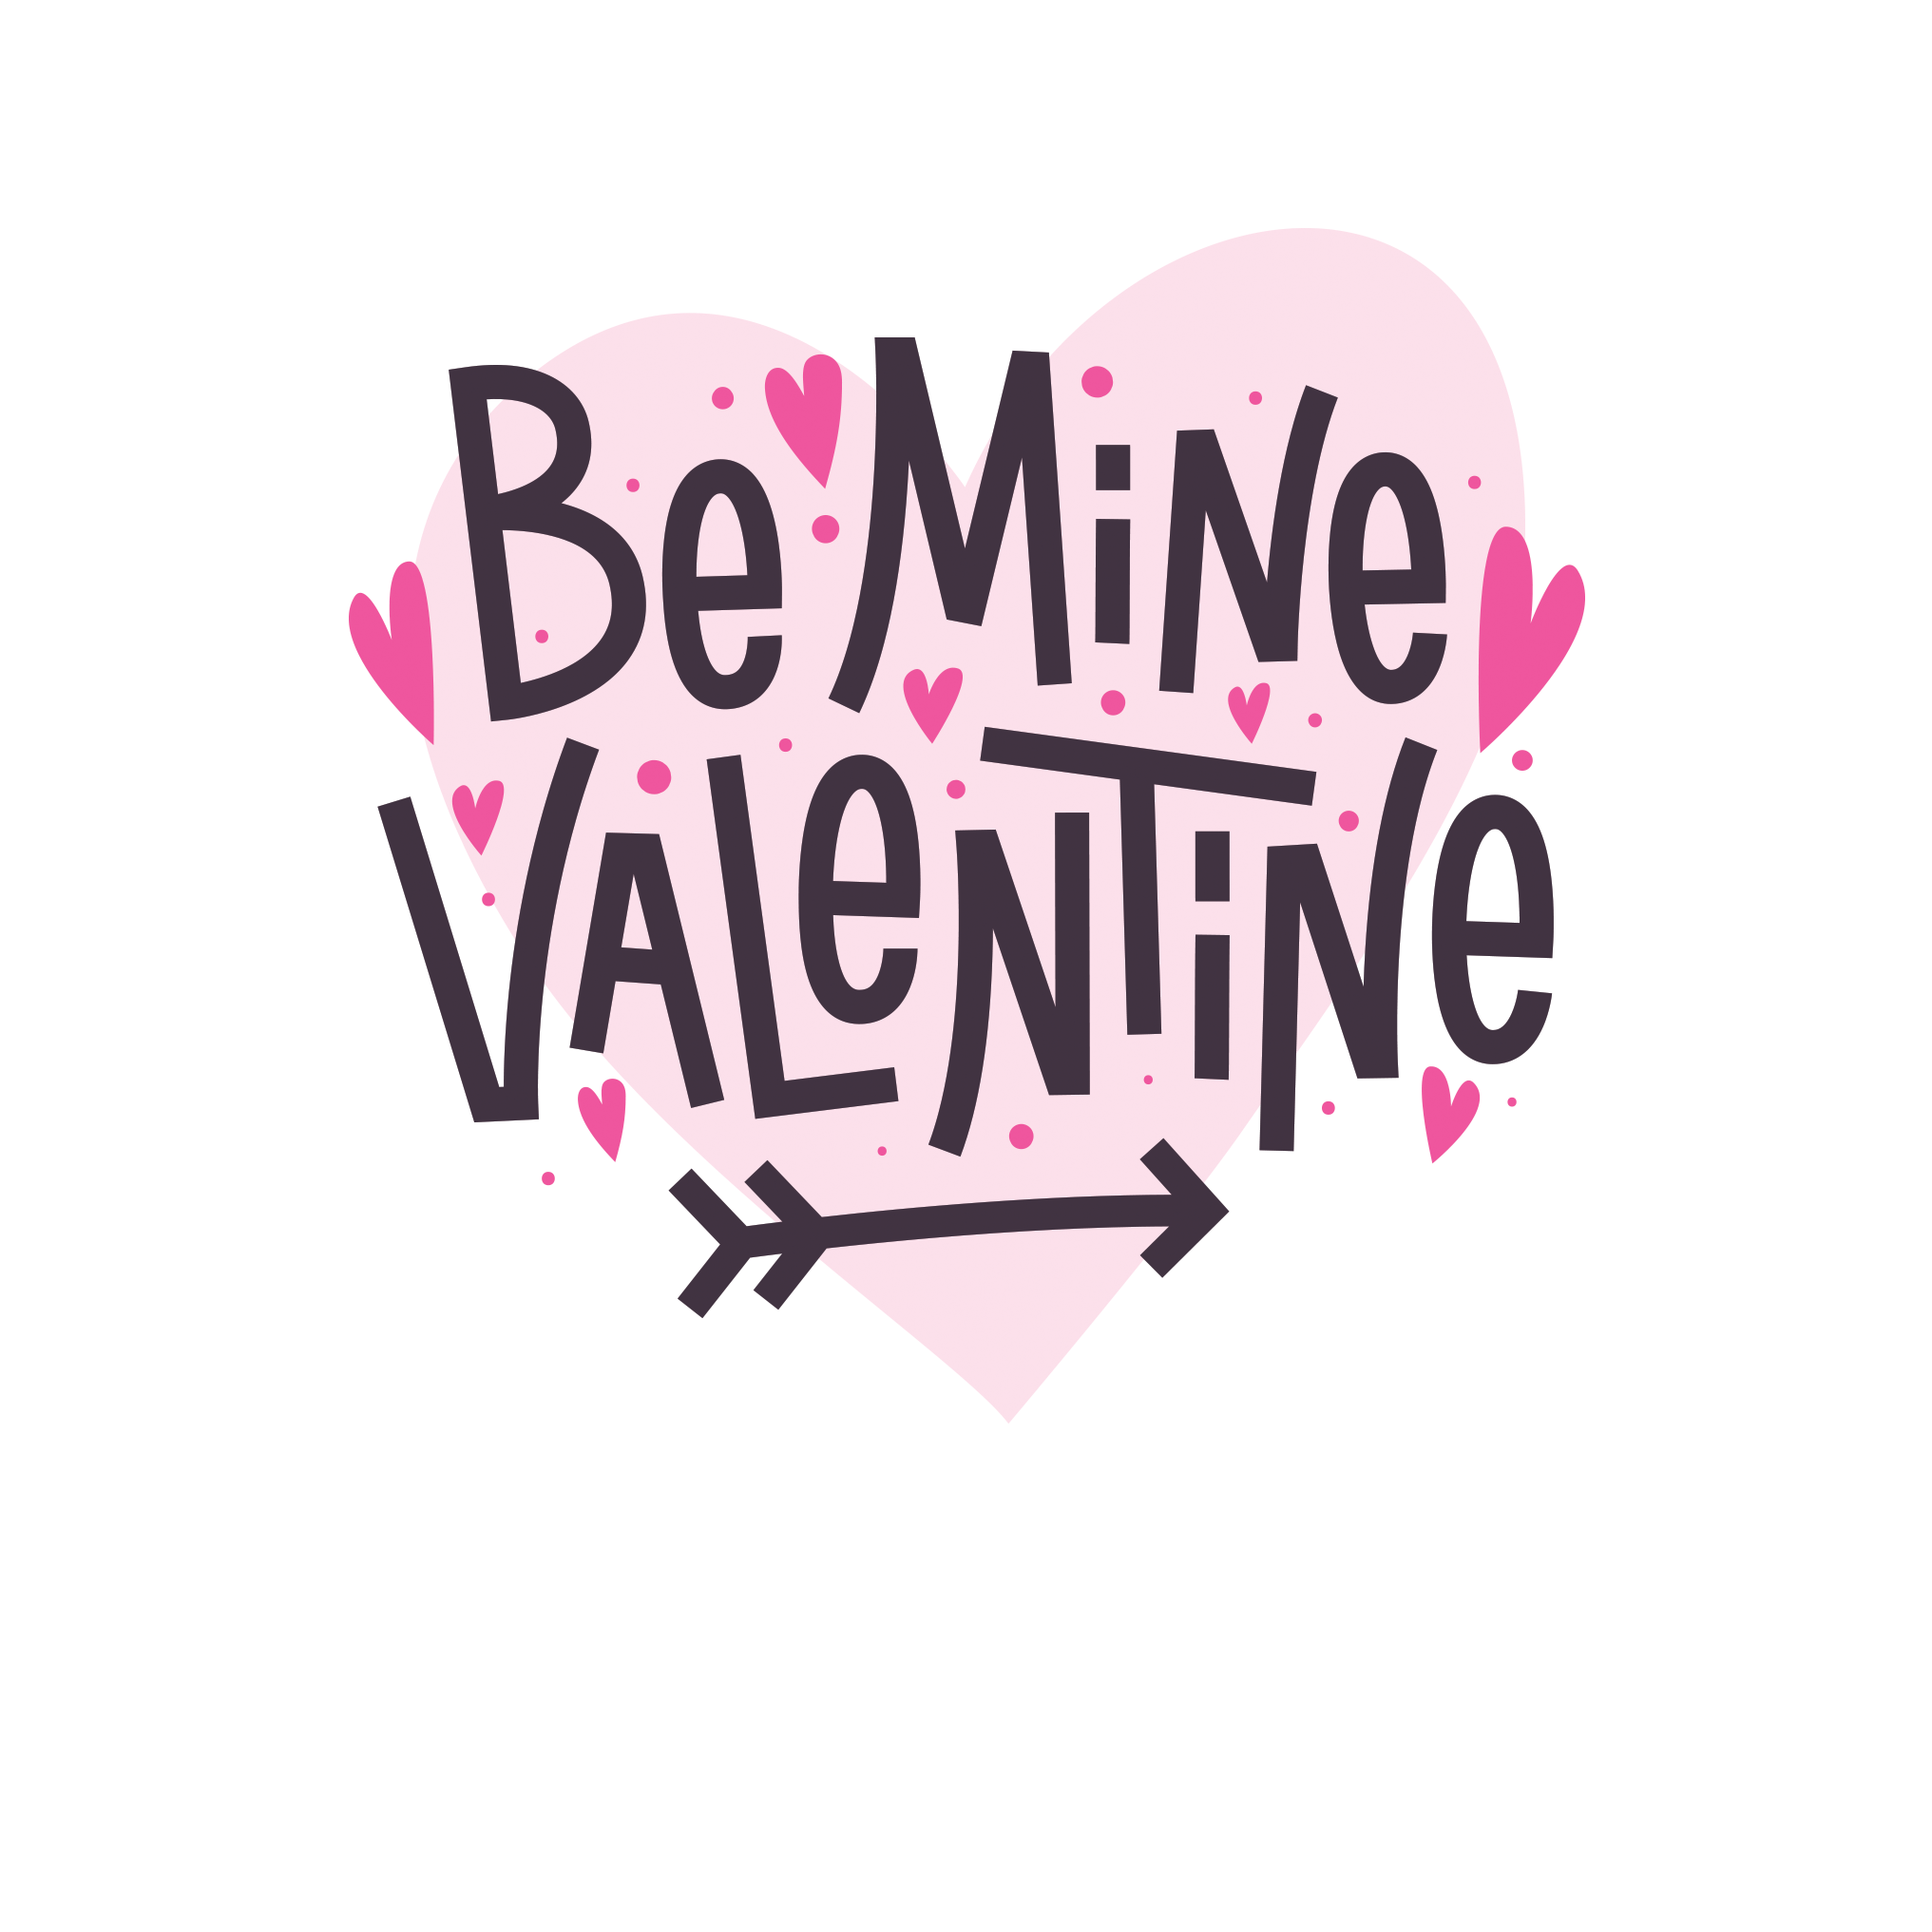 Be Mine Valentine Valentine's Day Card